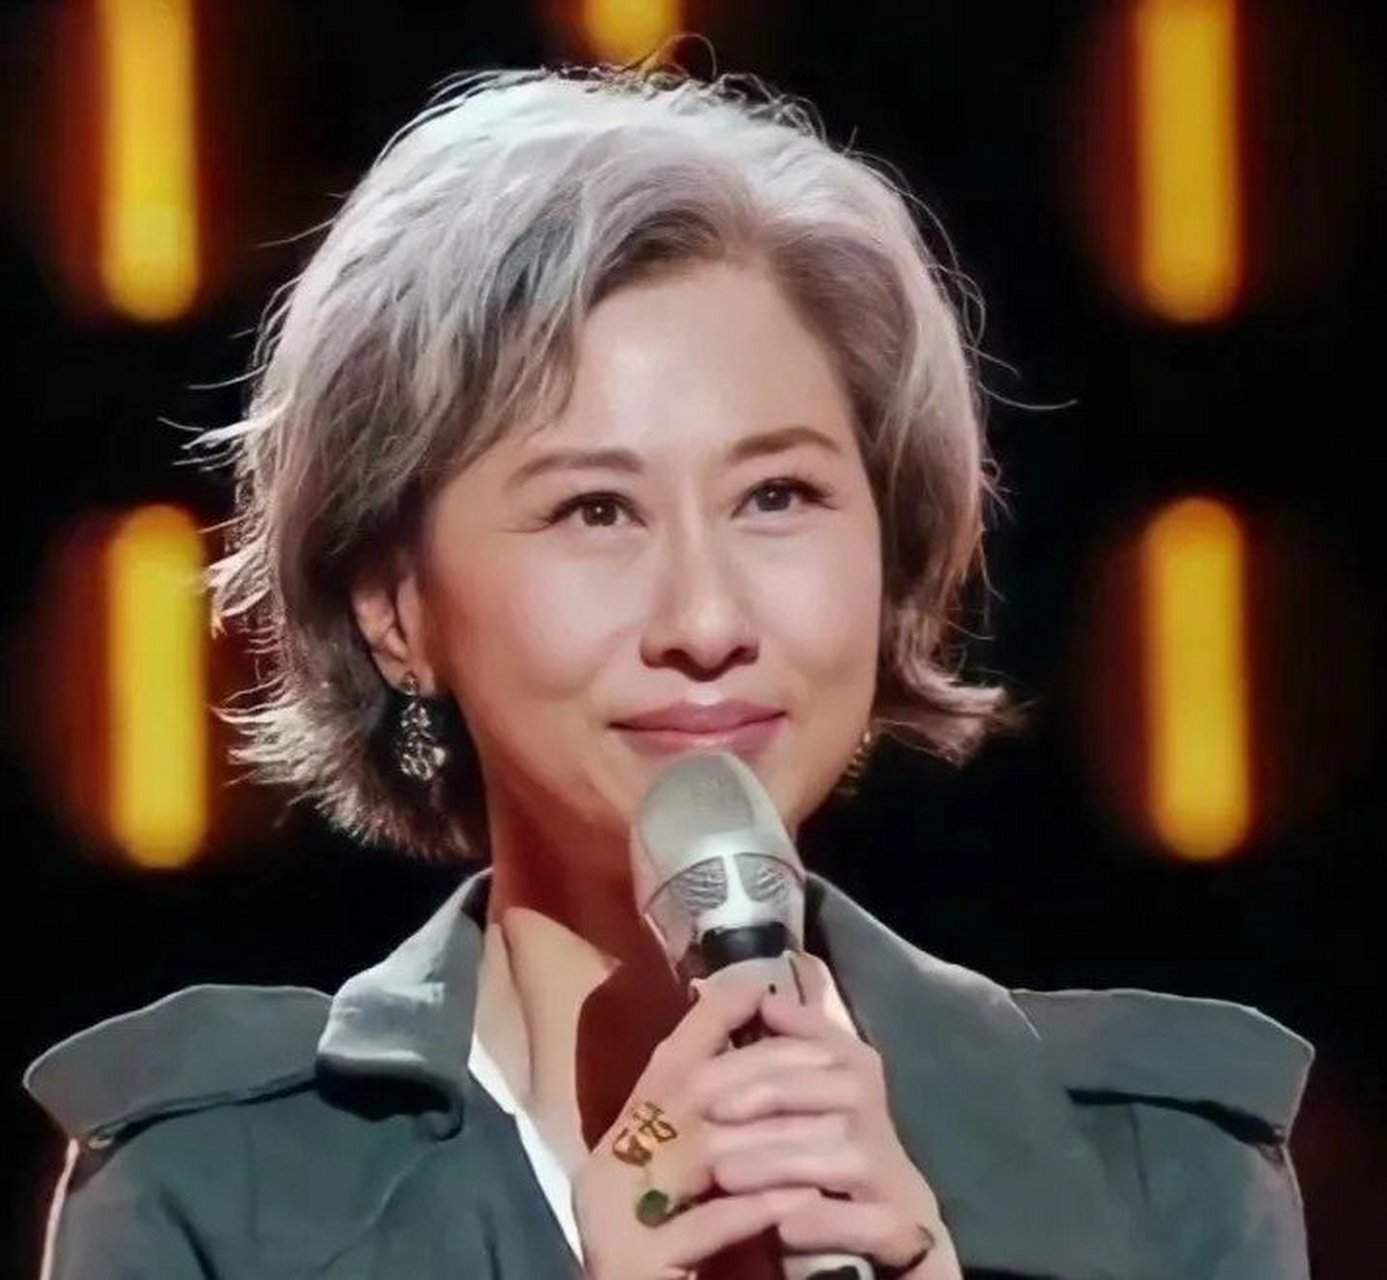 61岁的叶倩文,作为一名老牌艺人,她的职业生涯充满了辉煌和坎坷